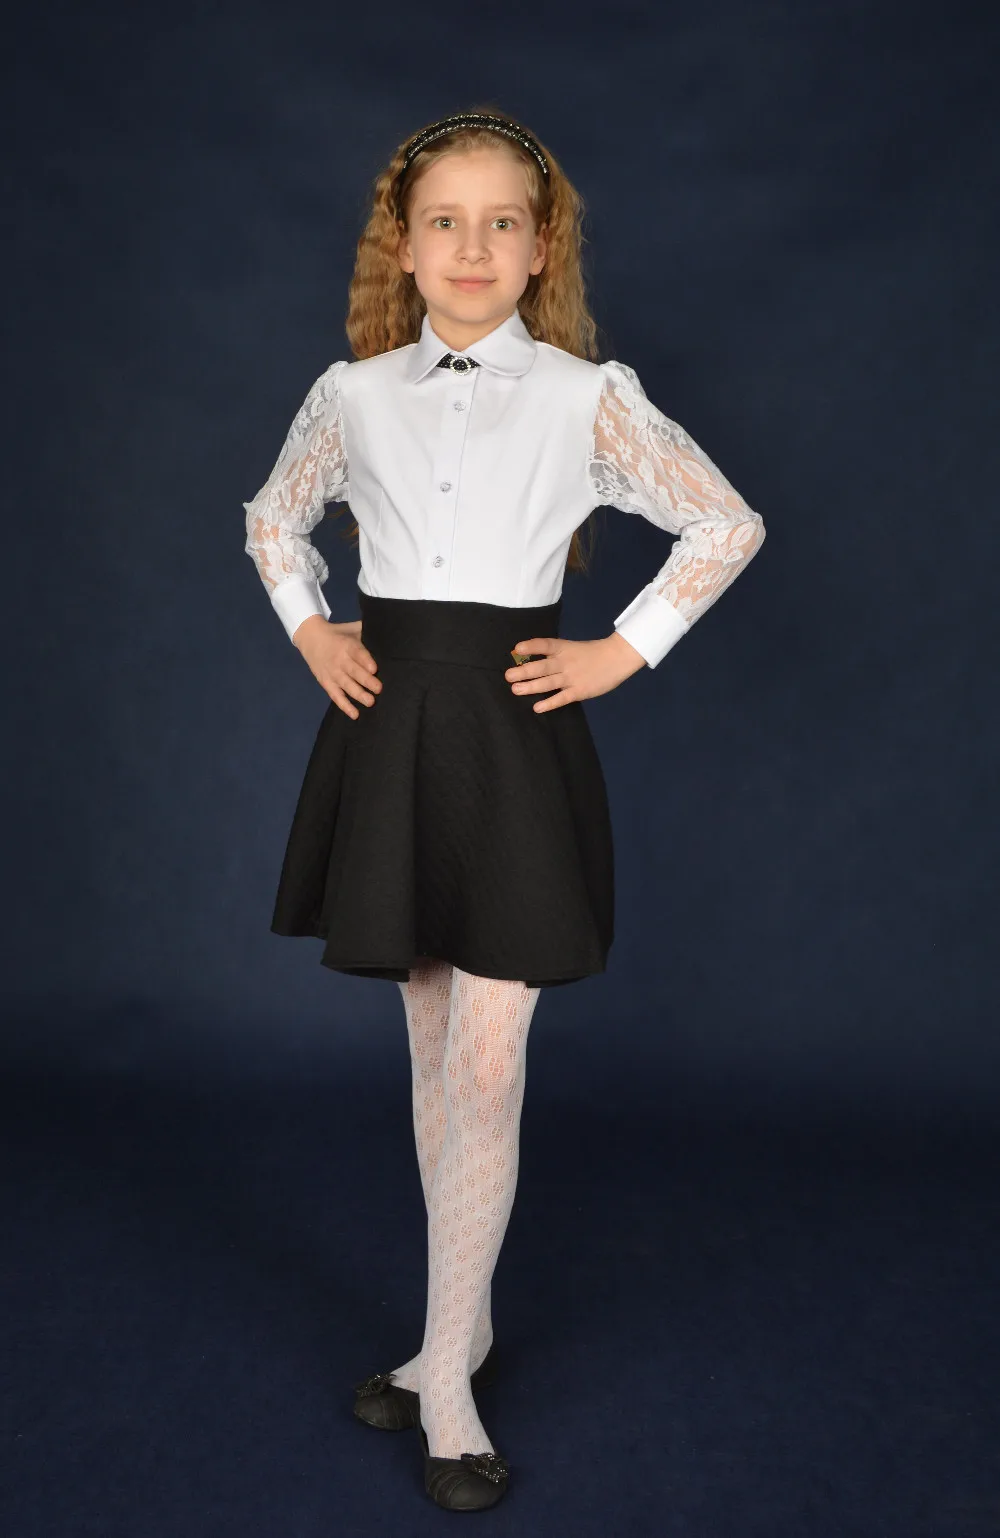 White Victorian Blouse For School Uniform - Buy School Uniform Product ...